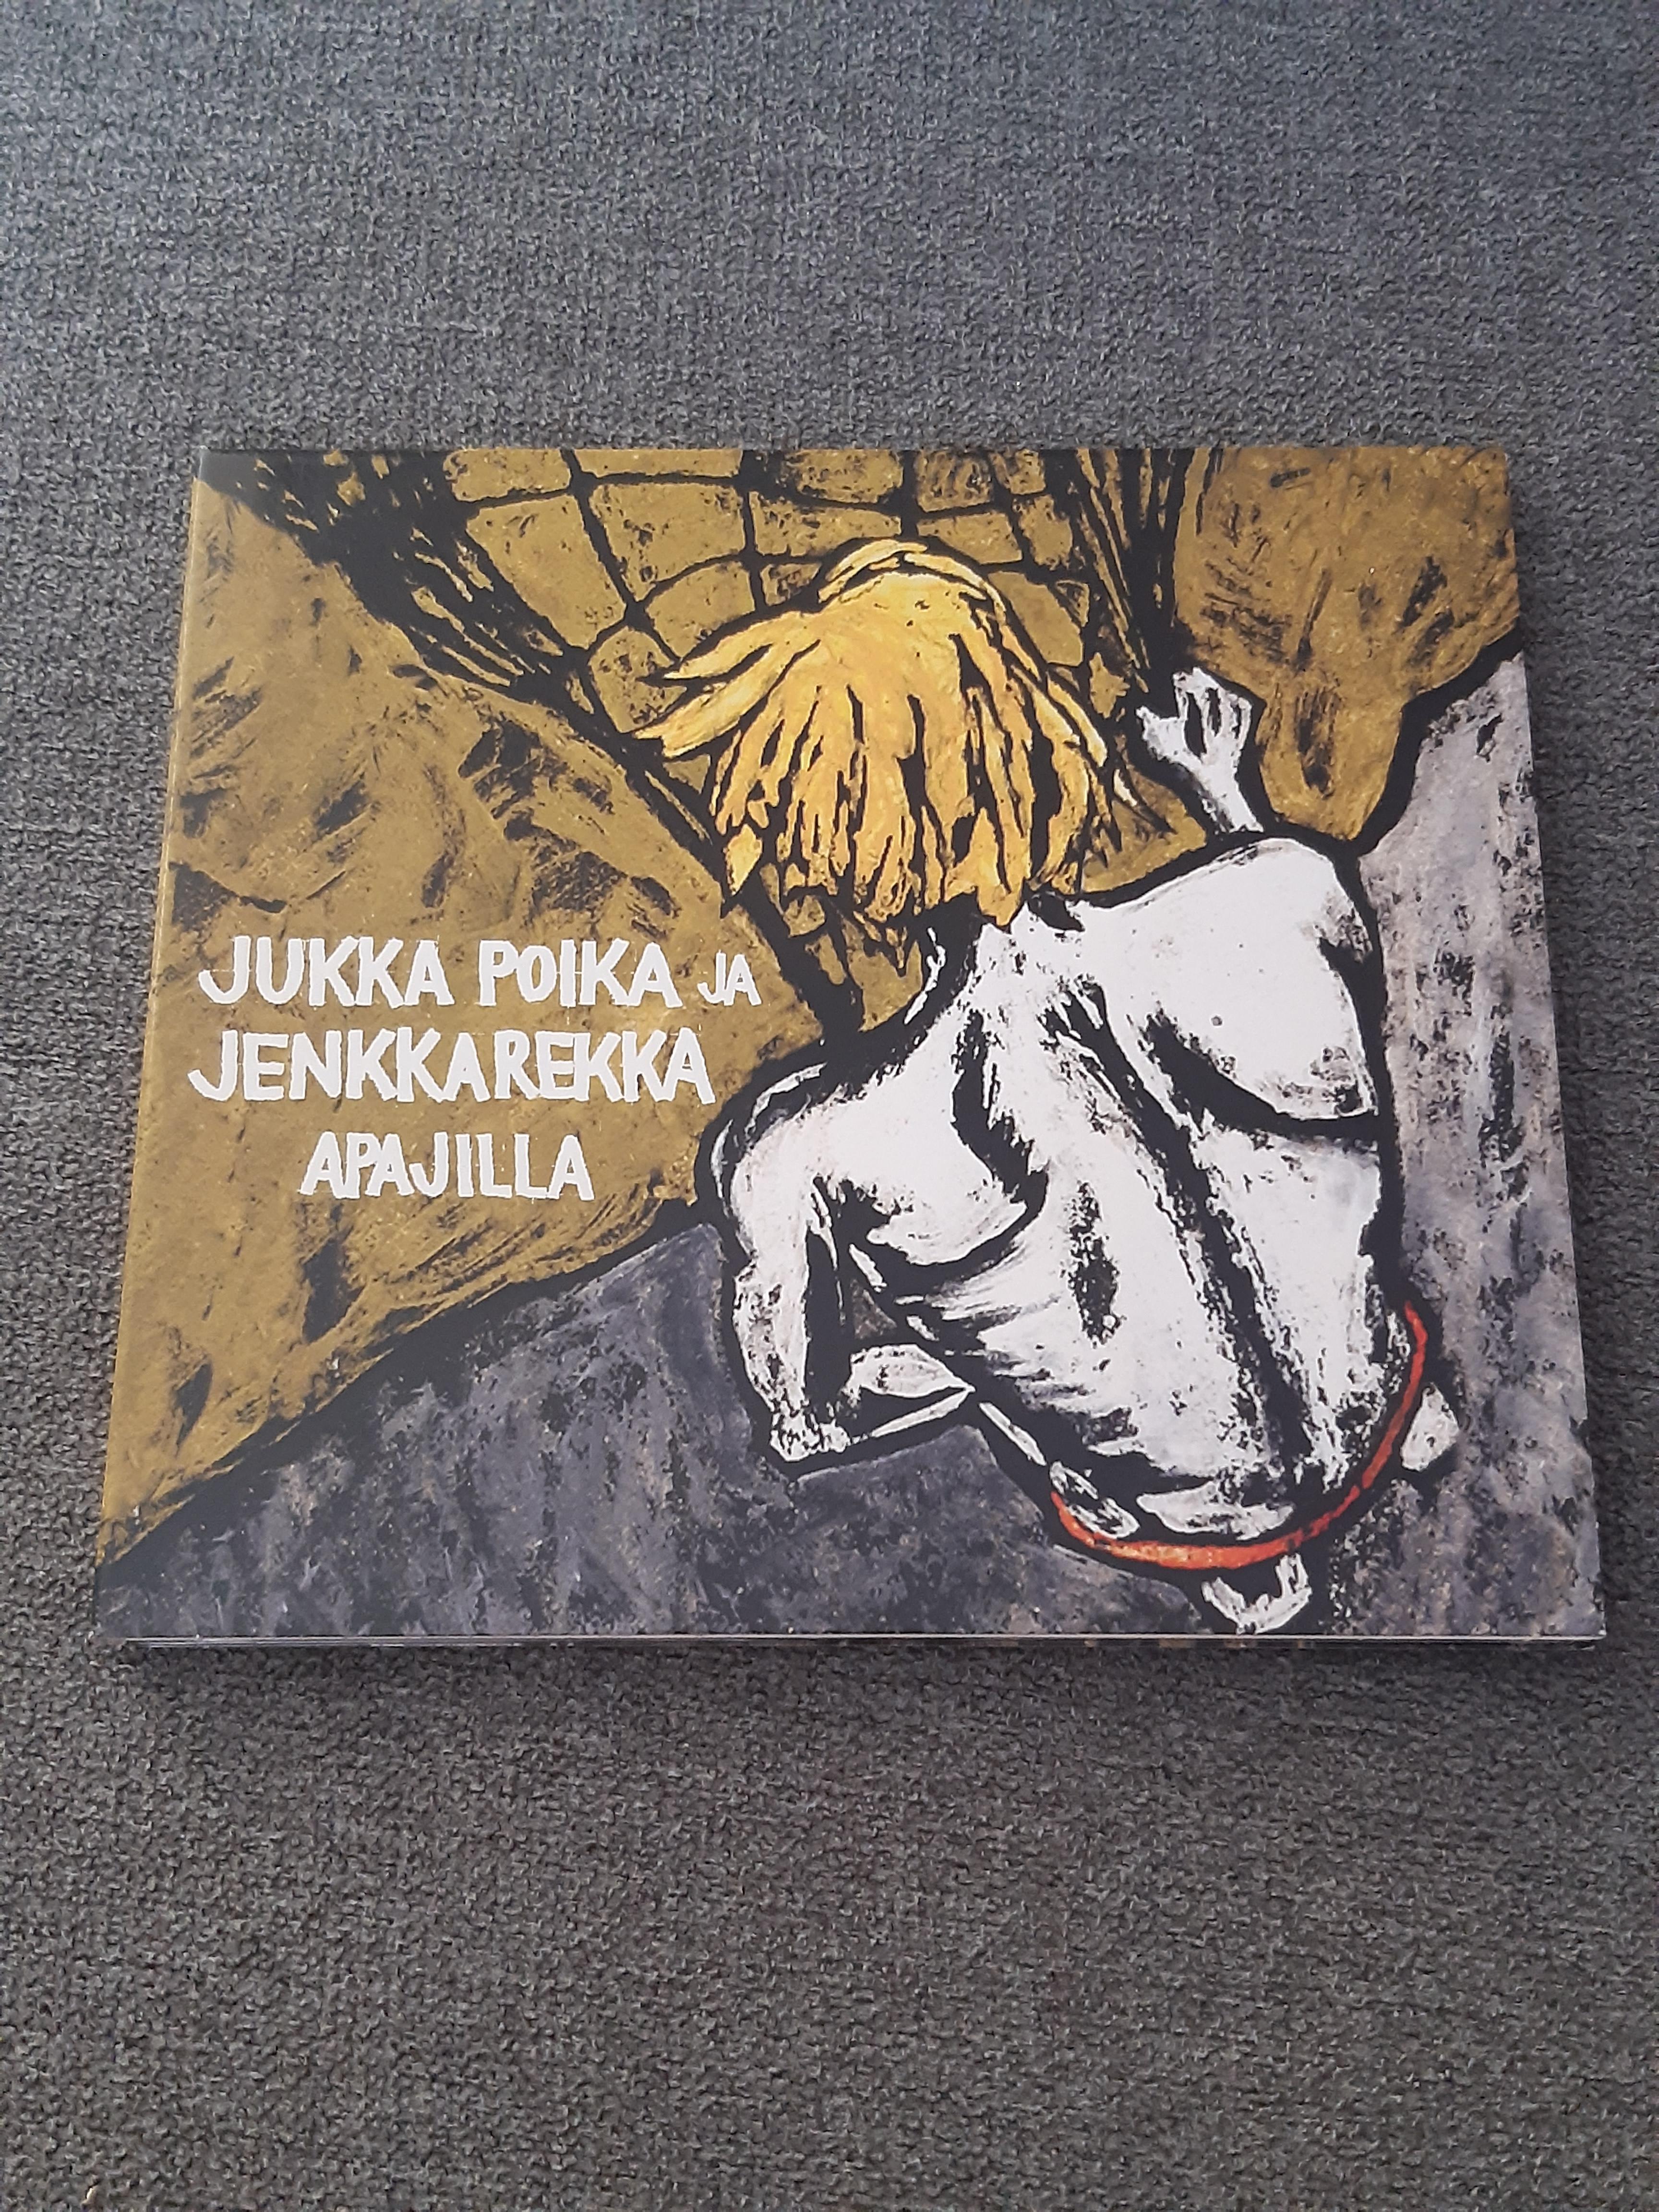 Jukka Poika ja Jenkkarekka - Apajilla - CD (käytetty)